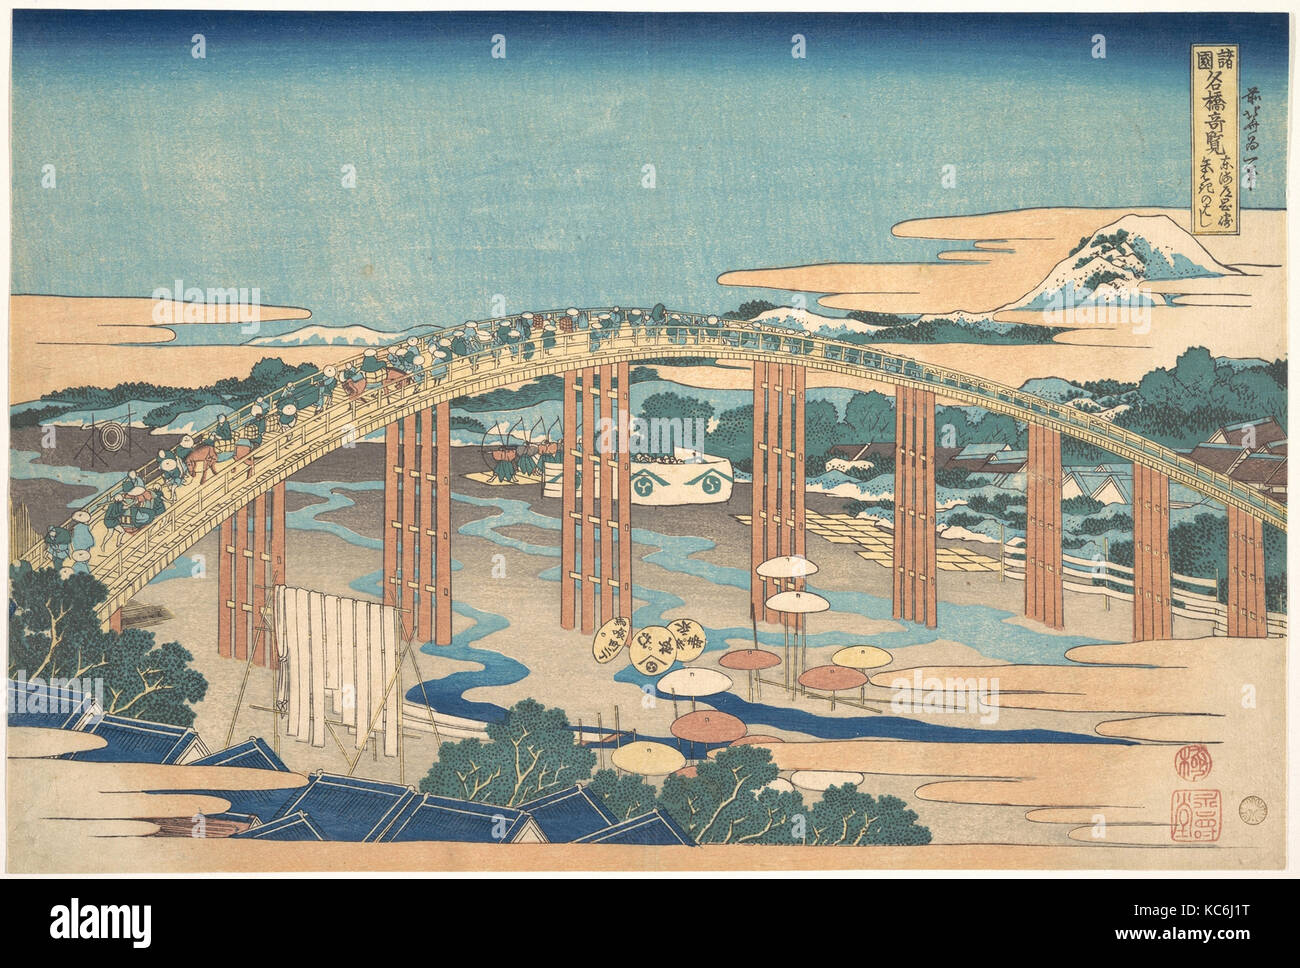 諸國名橋奇覧 東海道岡崎矢はぎのはし, Yahagi ponte di Okazaki sul Tōkaidō (Tōkaidō Okazaki Yahagi no hashi), dalla serie notevoli panorami Foto Stock